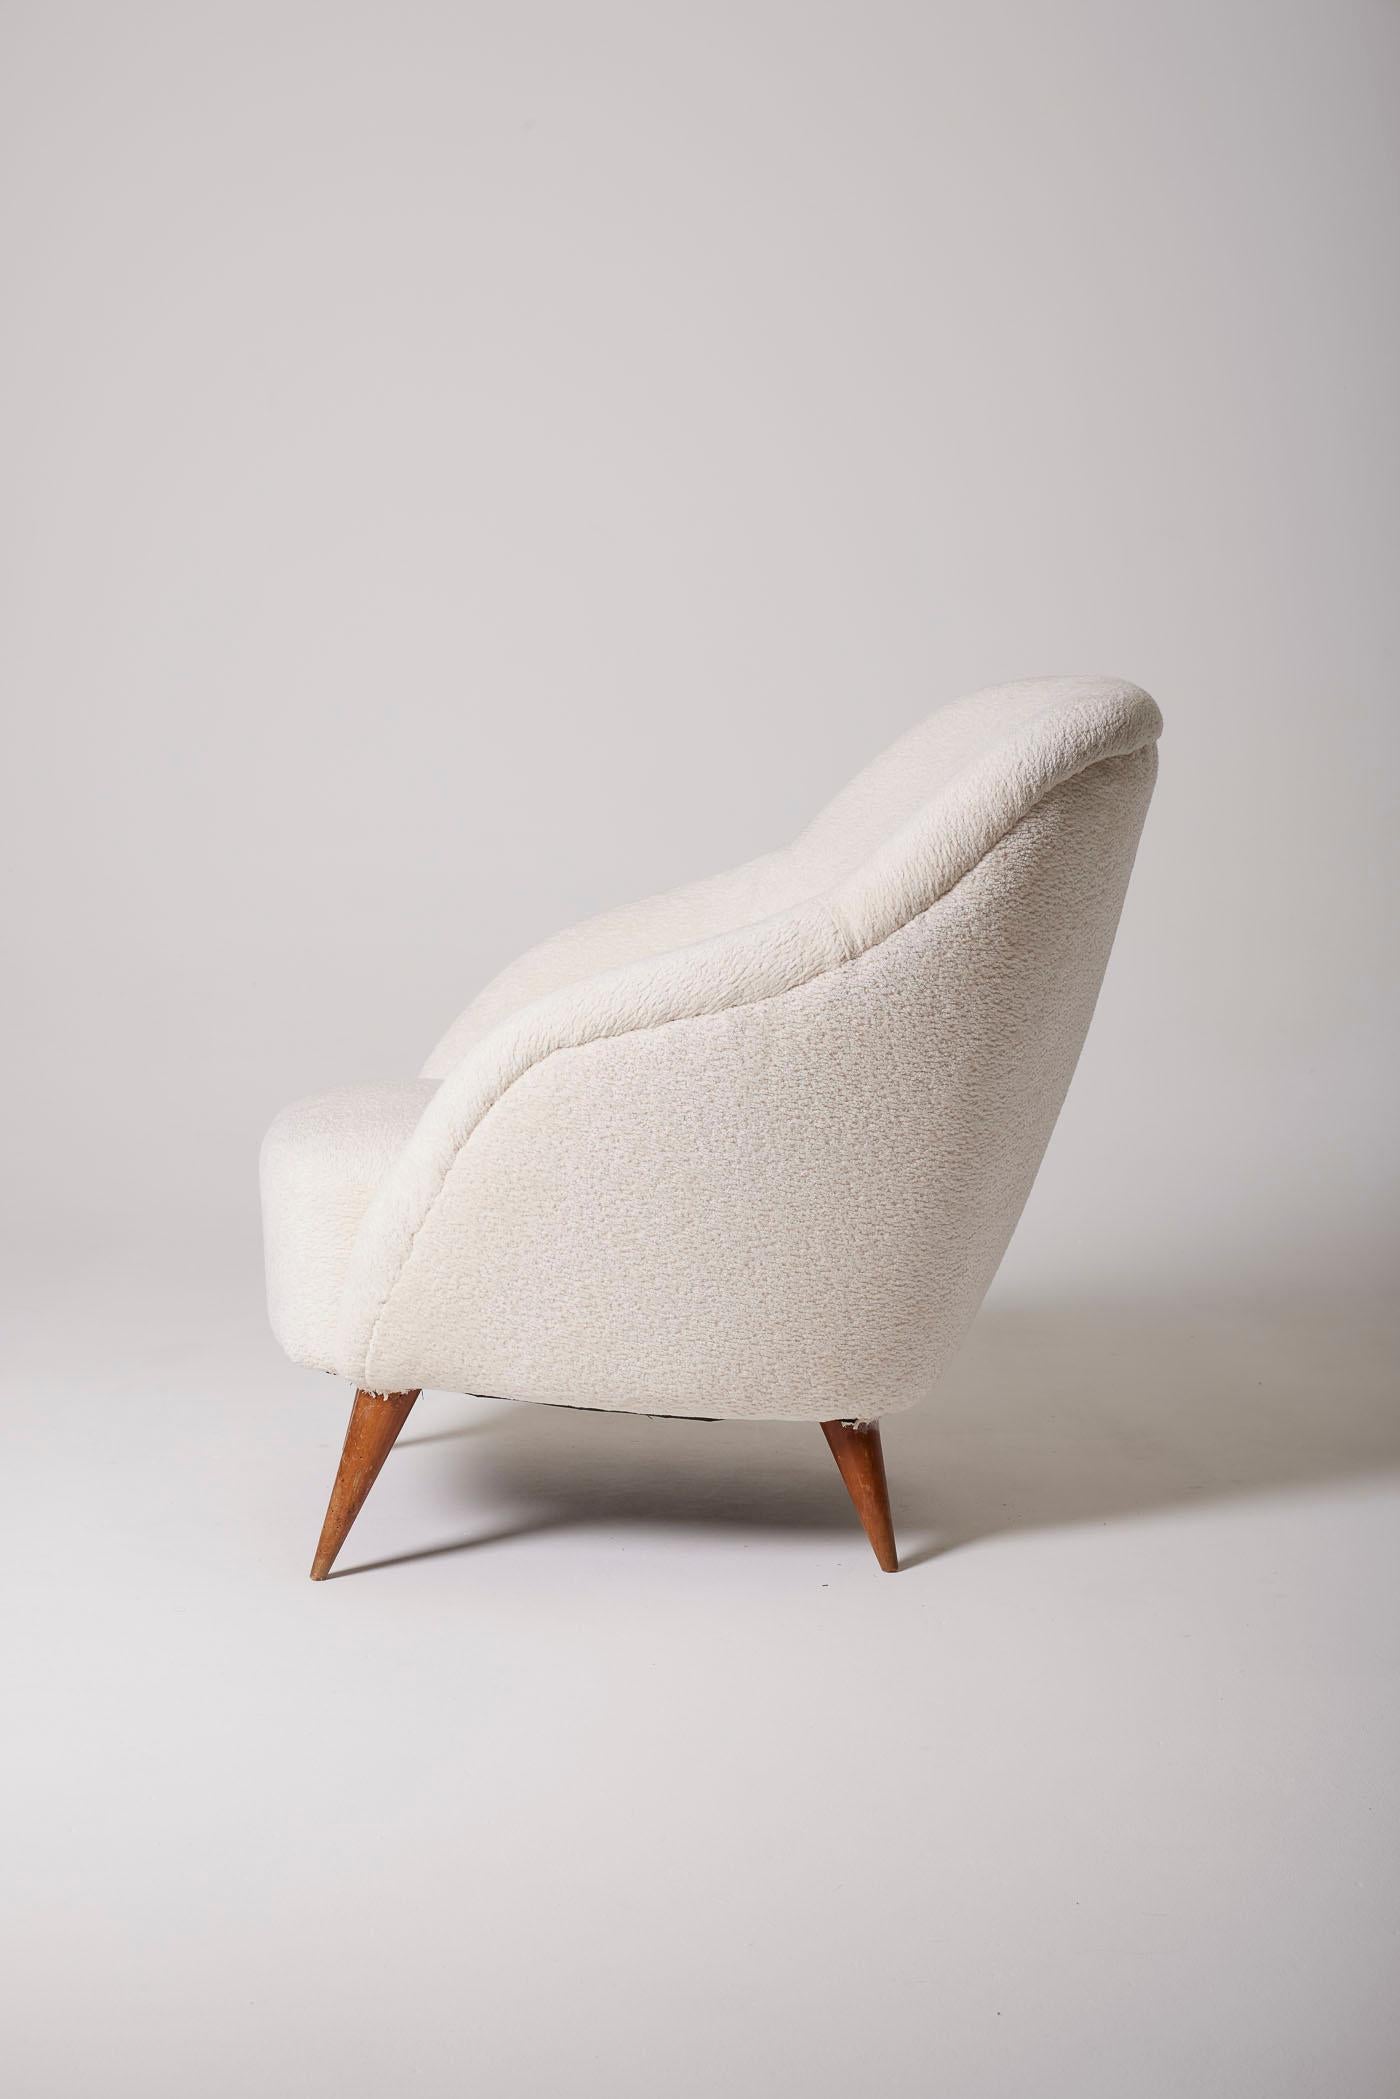 Italienischer Sessel aus den 1950er Jahren, inspiriert von dem Designer Gio Ponti. Dieser Sessel wurde mit Bouclé-Stoff neu gepolstert. Der Sockel ist aus Holz gefertigt. Perfekter Zustand.
DV346